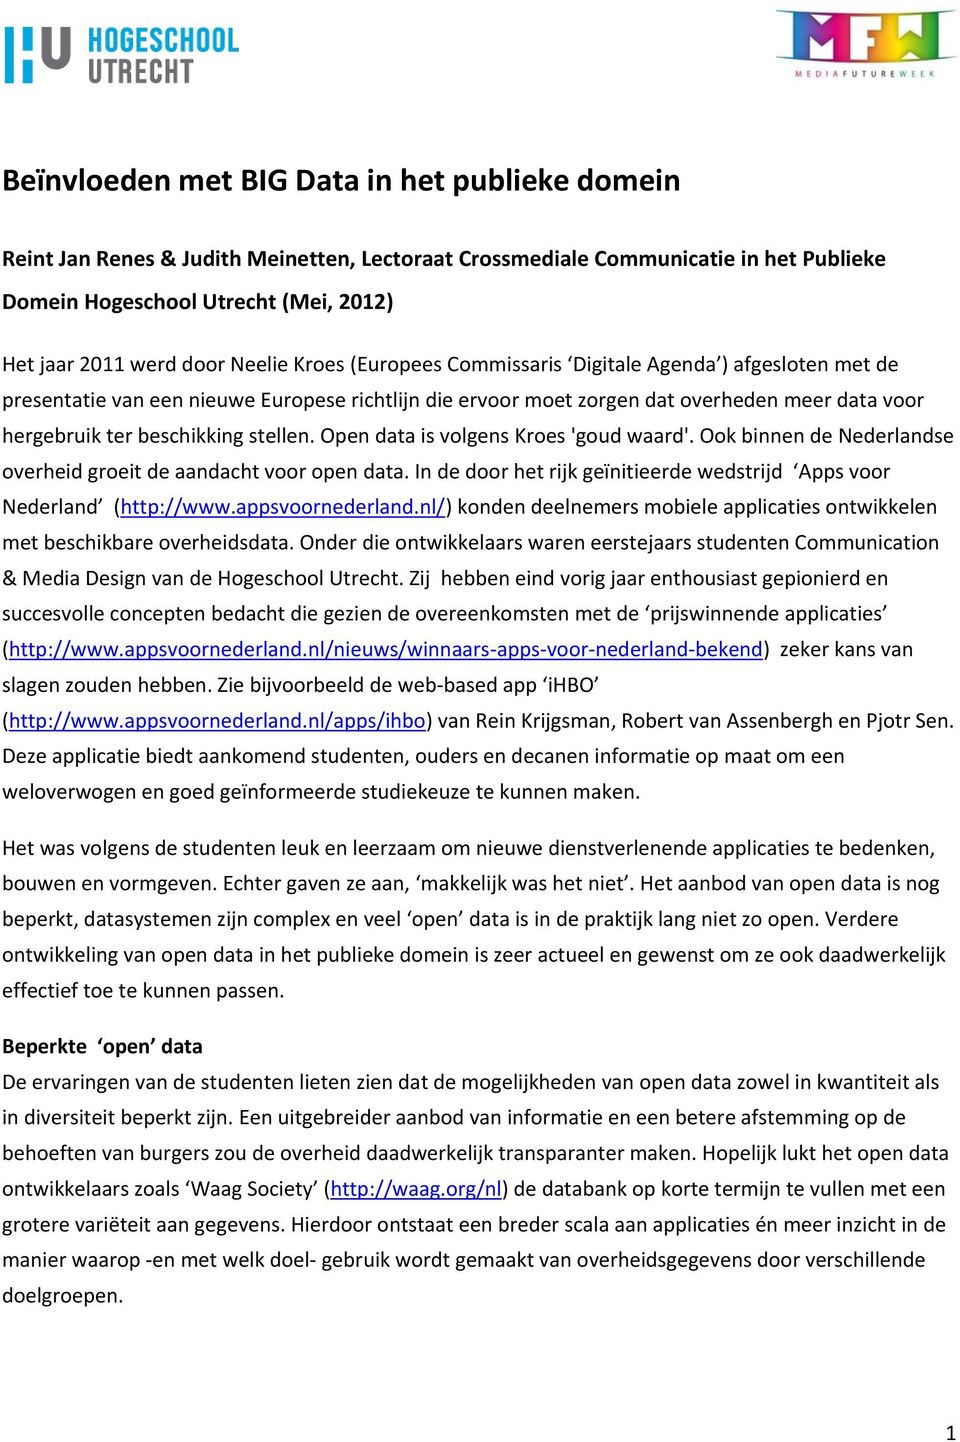 stellen. Open data is volgens Kroes 'goud waard'. Ook binnen de Nederlandse overheid groeit de aandacht voor open data. In de door het rijk geïnitieerde wedstrijd Apps voor Nederland (http://www.